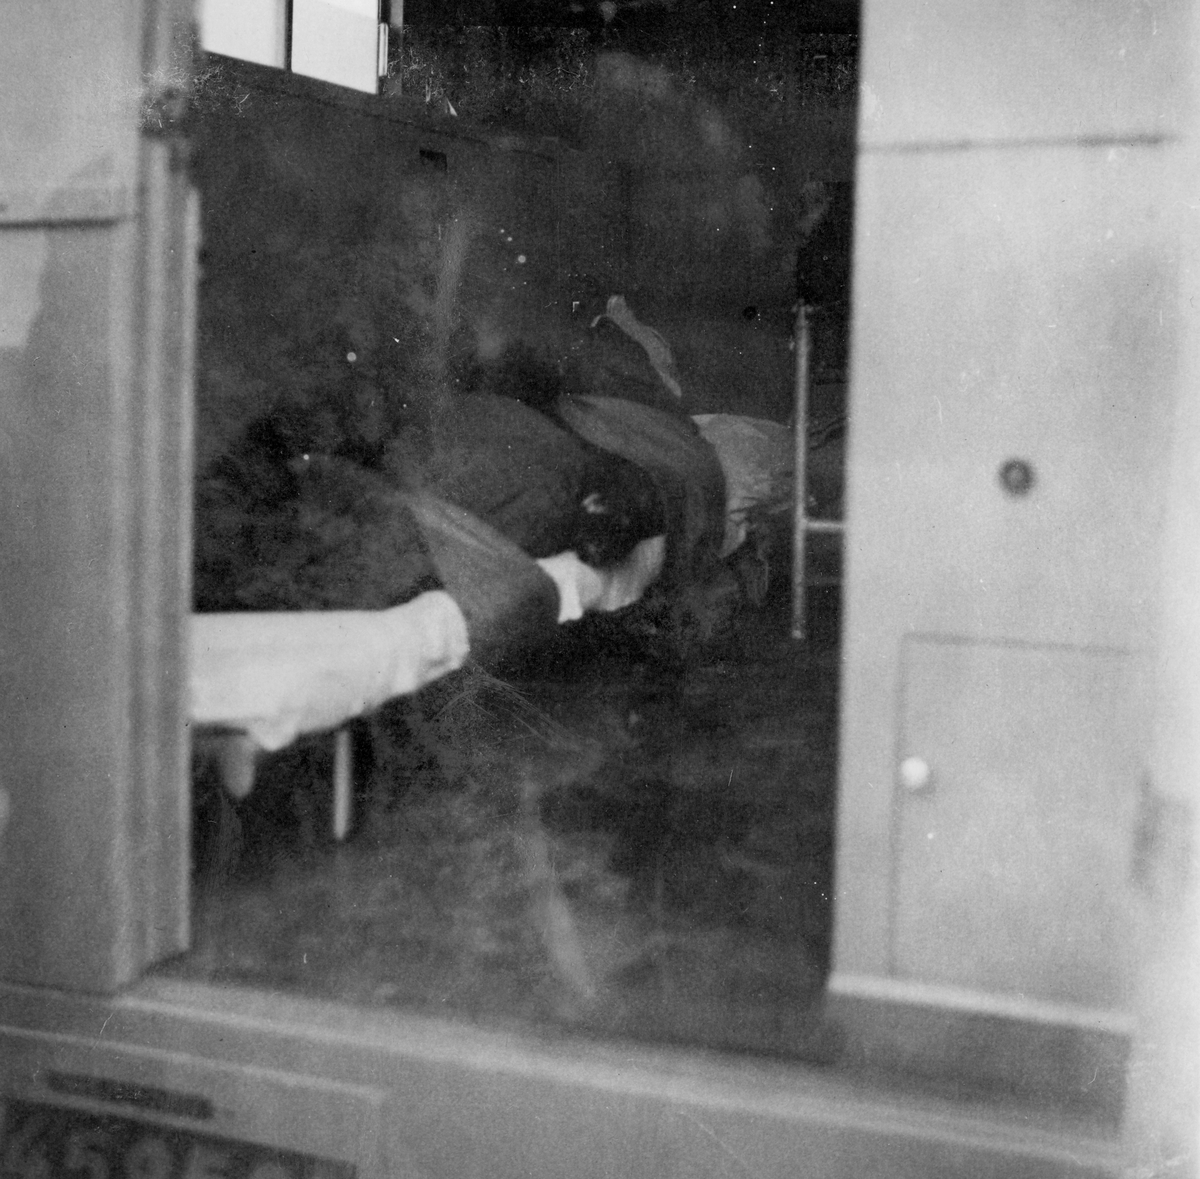 Skadad docka ligger i ambulans vid sjukvårdsövning på F 11 Södermanlands flygflottilj, 1945.

Ur fotoalbum "Sjukvårdsskolan 15/1-15/3 1945" från F 11.